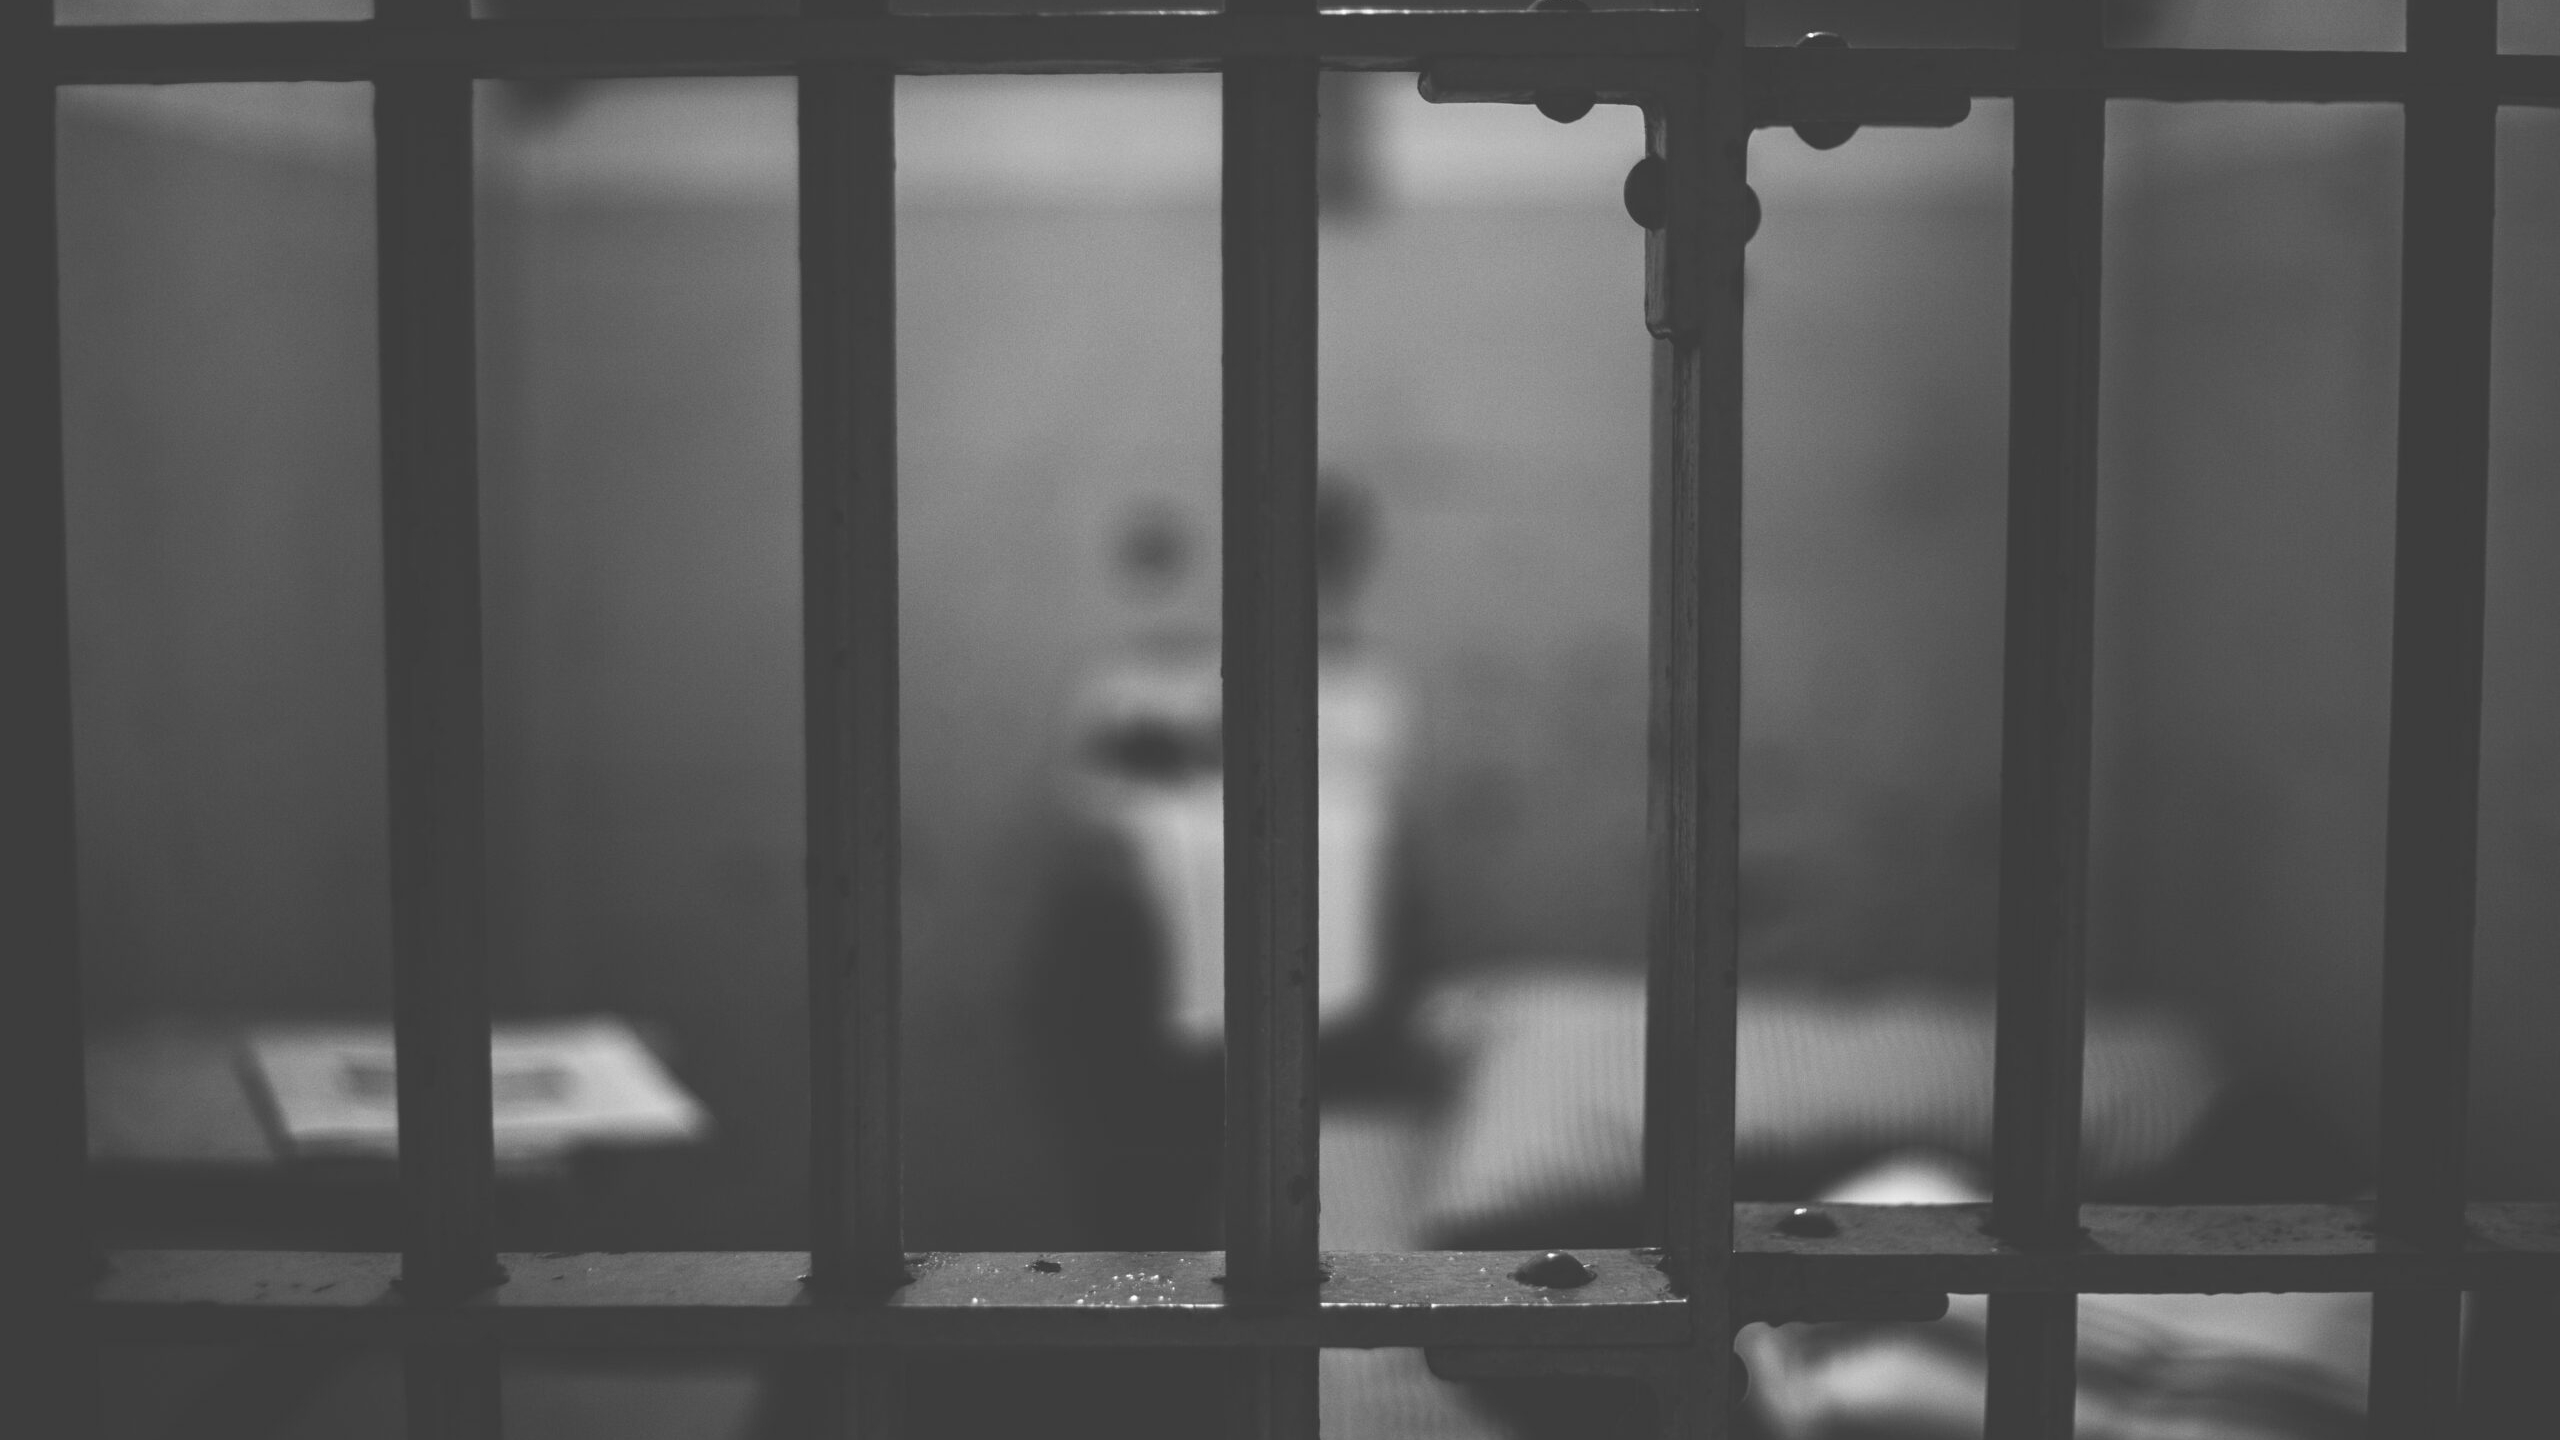 Хотел изнасиловать, но не успел: в Чувашии пенсионер отправится за решетку на 3,5 года